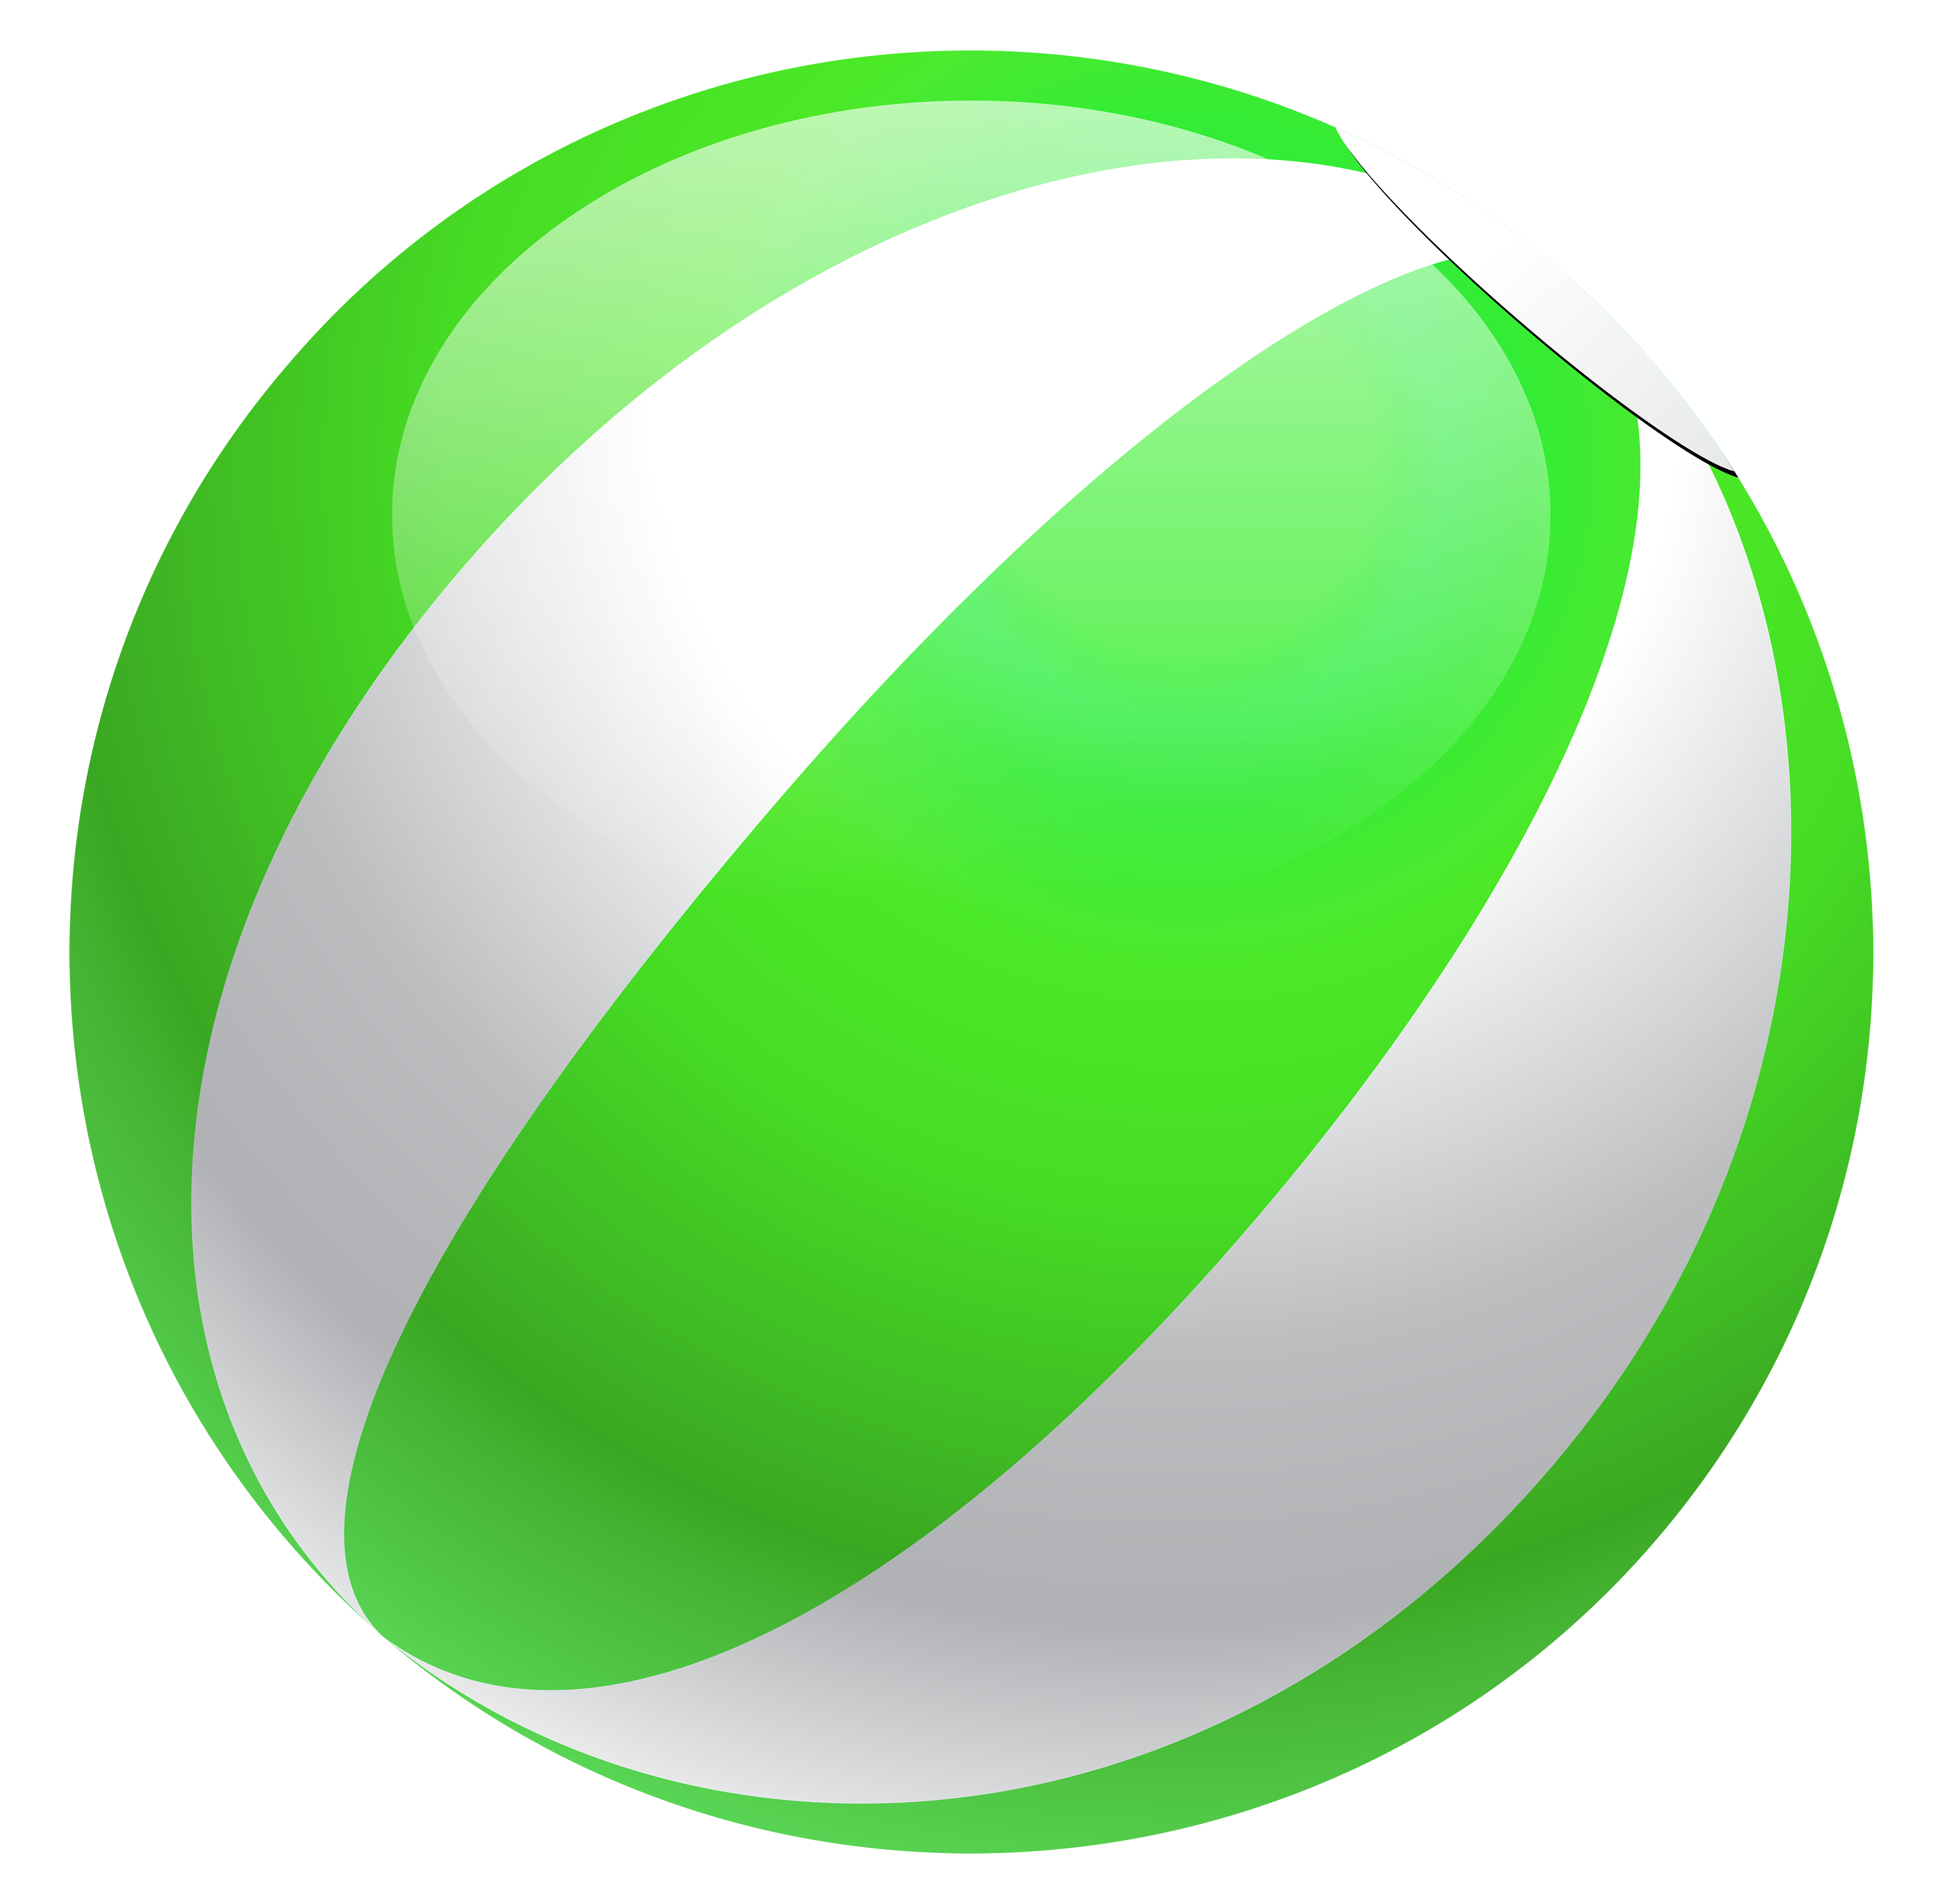 Transparent green beach ball clipart